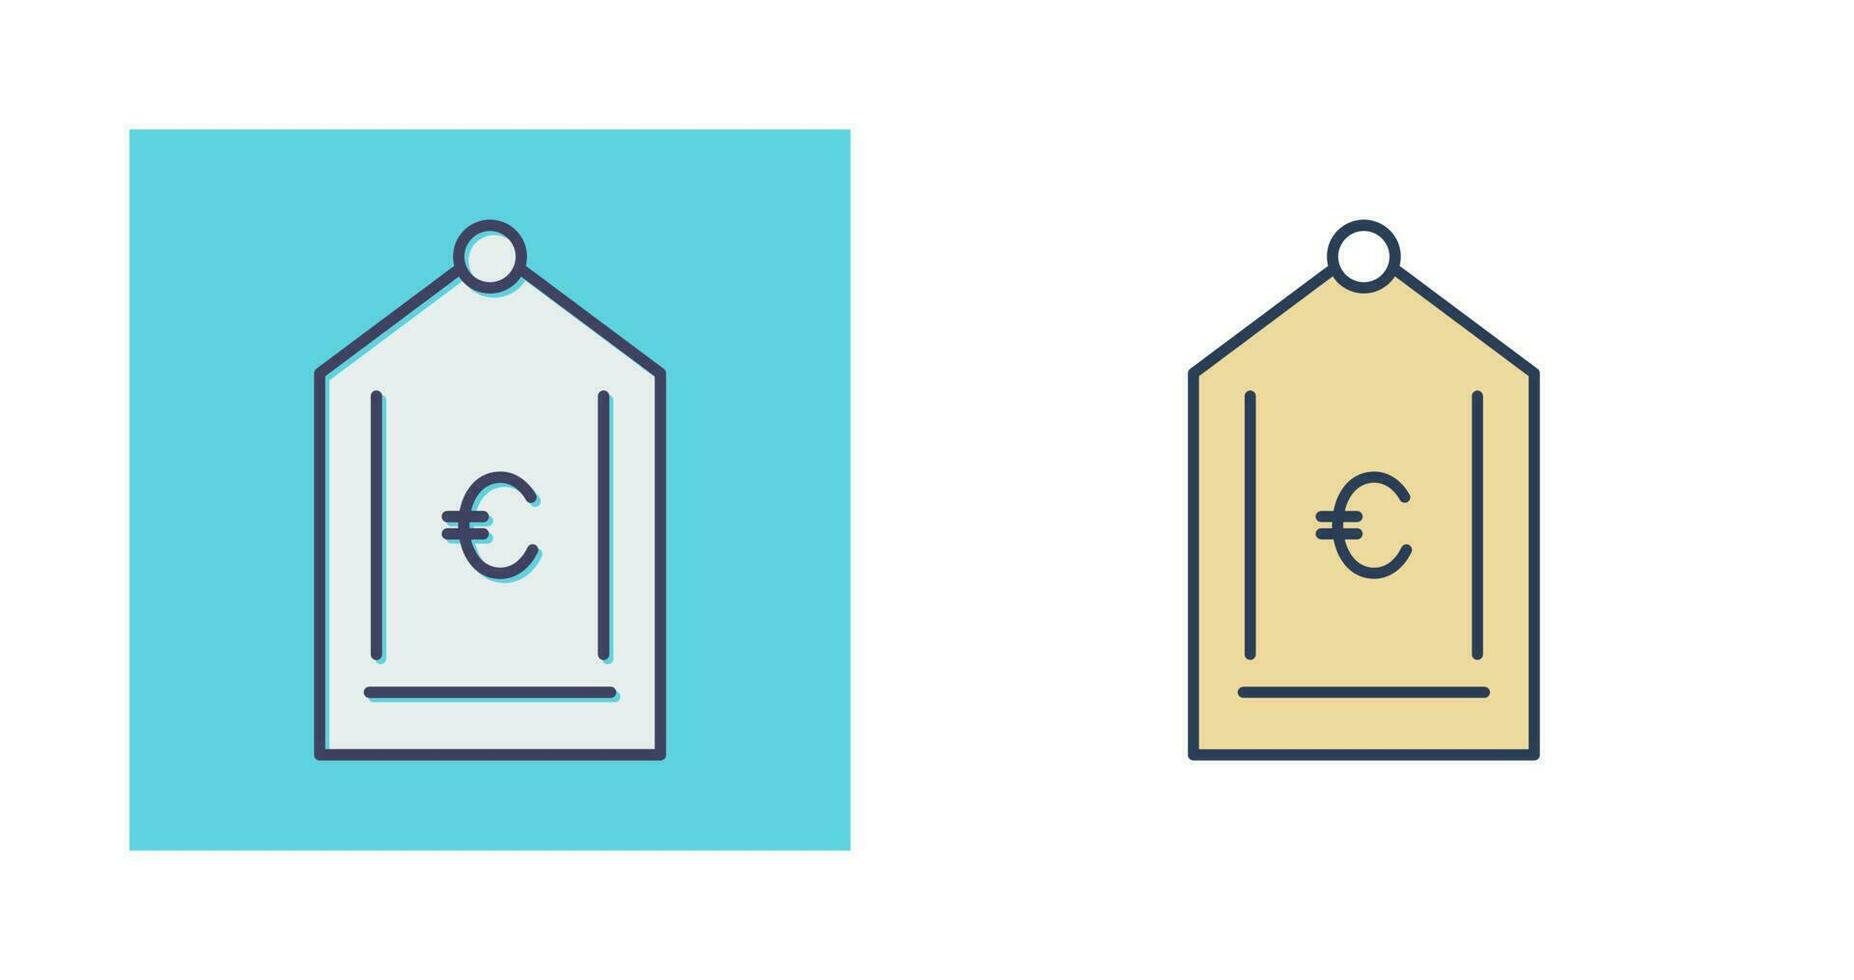 icono de vector de etiqueta euro